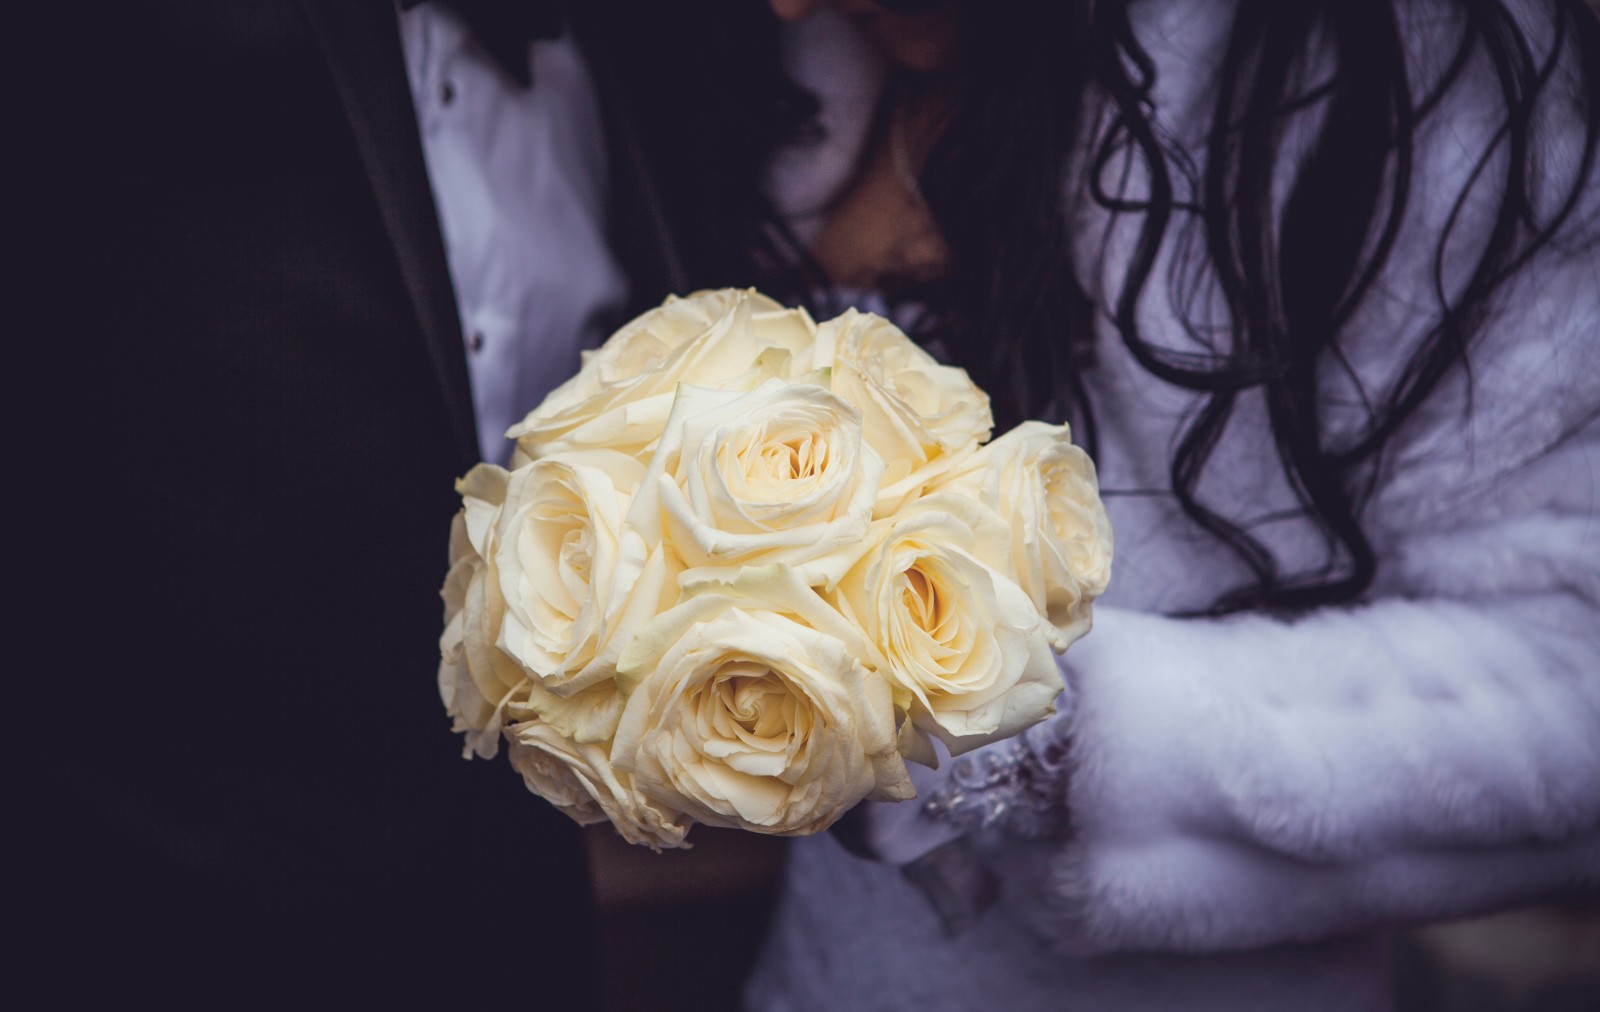 mawar, bunga-bunga, buket, pernikahan